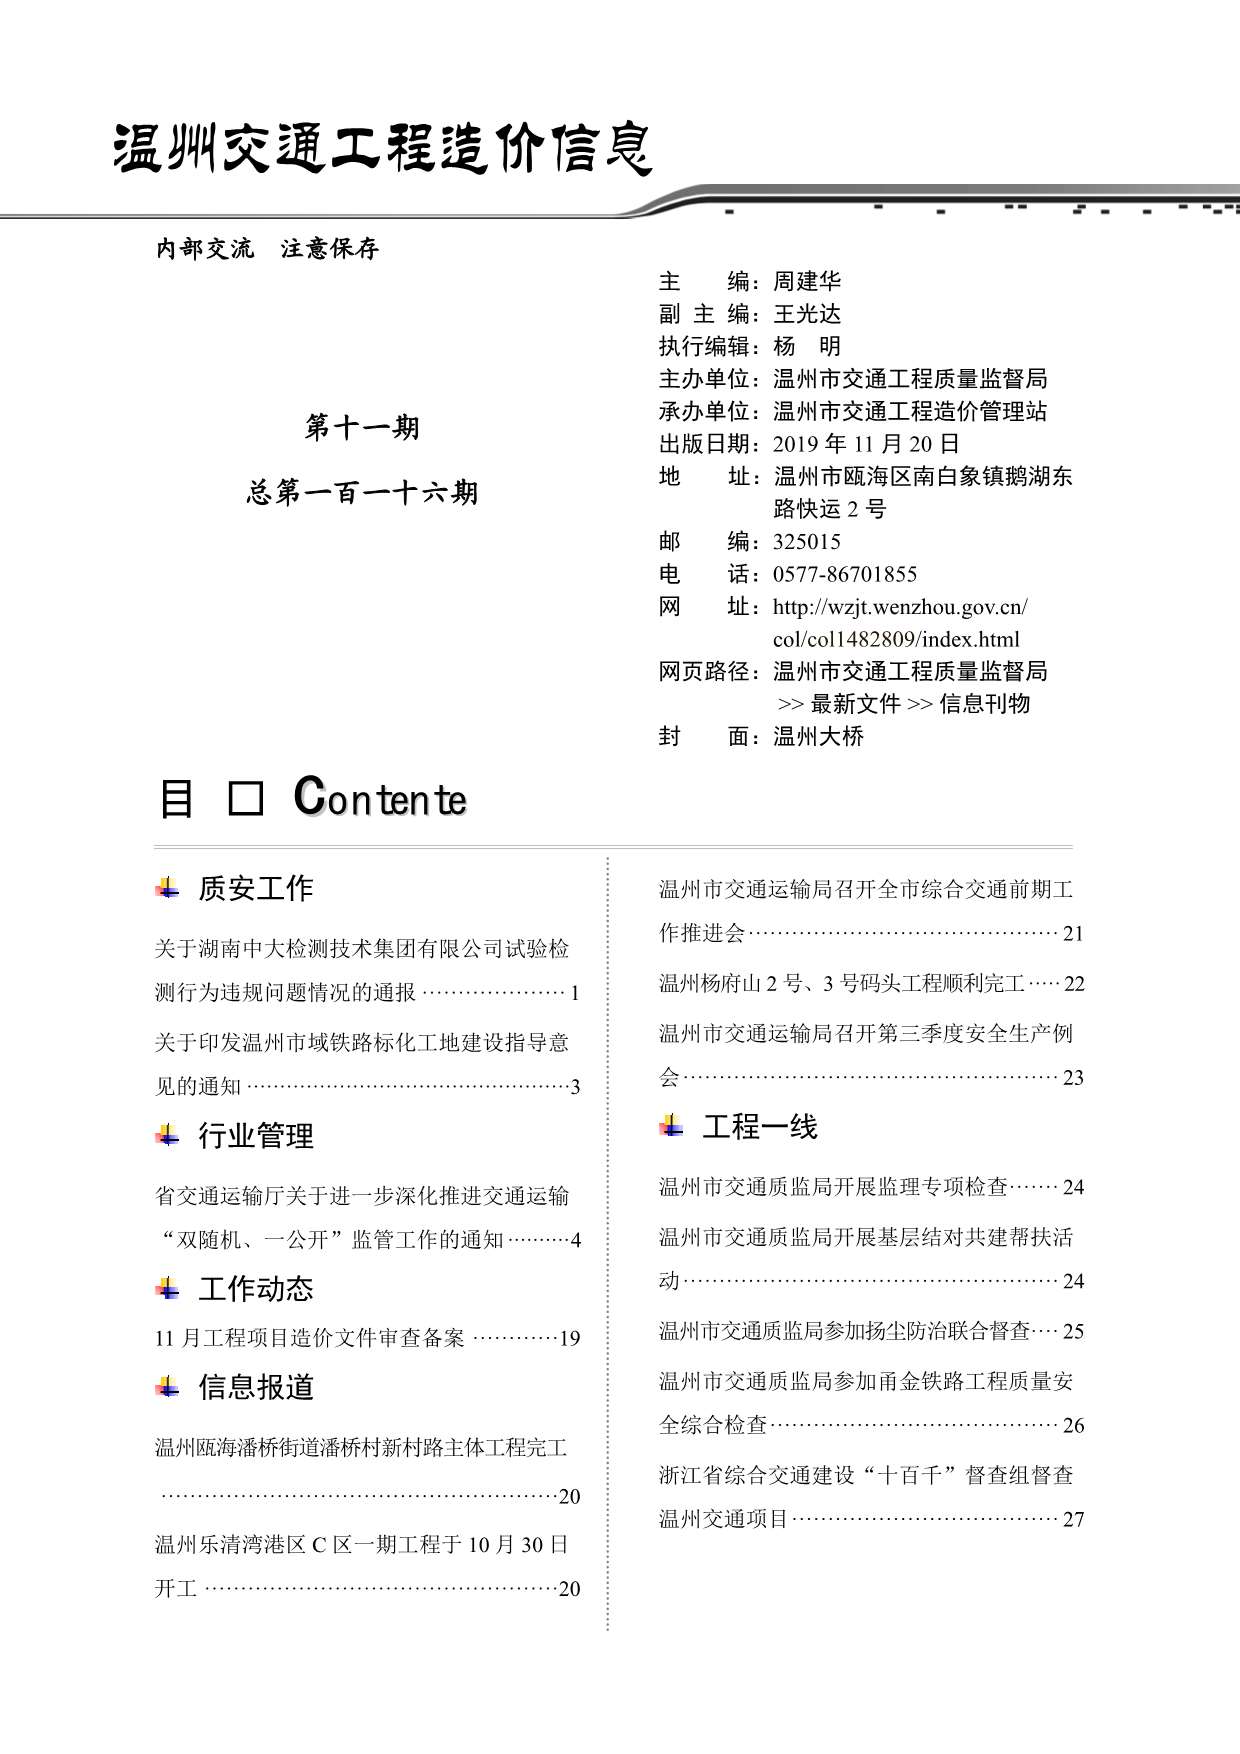 2019年11期温州交通信息价pdf扫描件